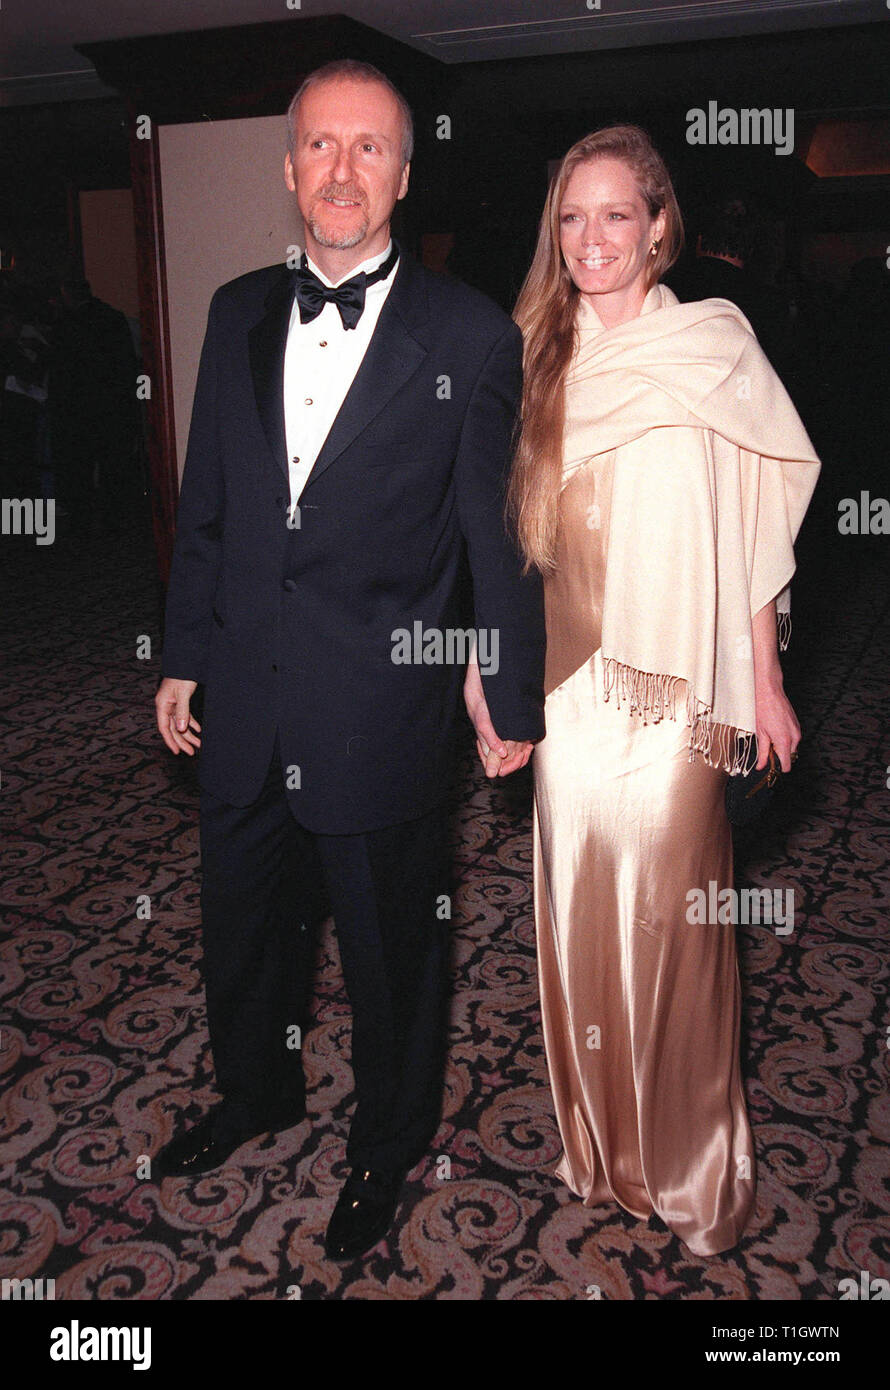 LOS ANGELES, CA - March 7, 1999: El Director James Cameron y la actriz novia Suzy AMIS en el Directors Guild of America Awards en Beverly Hills. © Paul Smith / Featureflash Foto de stock